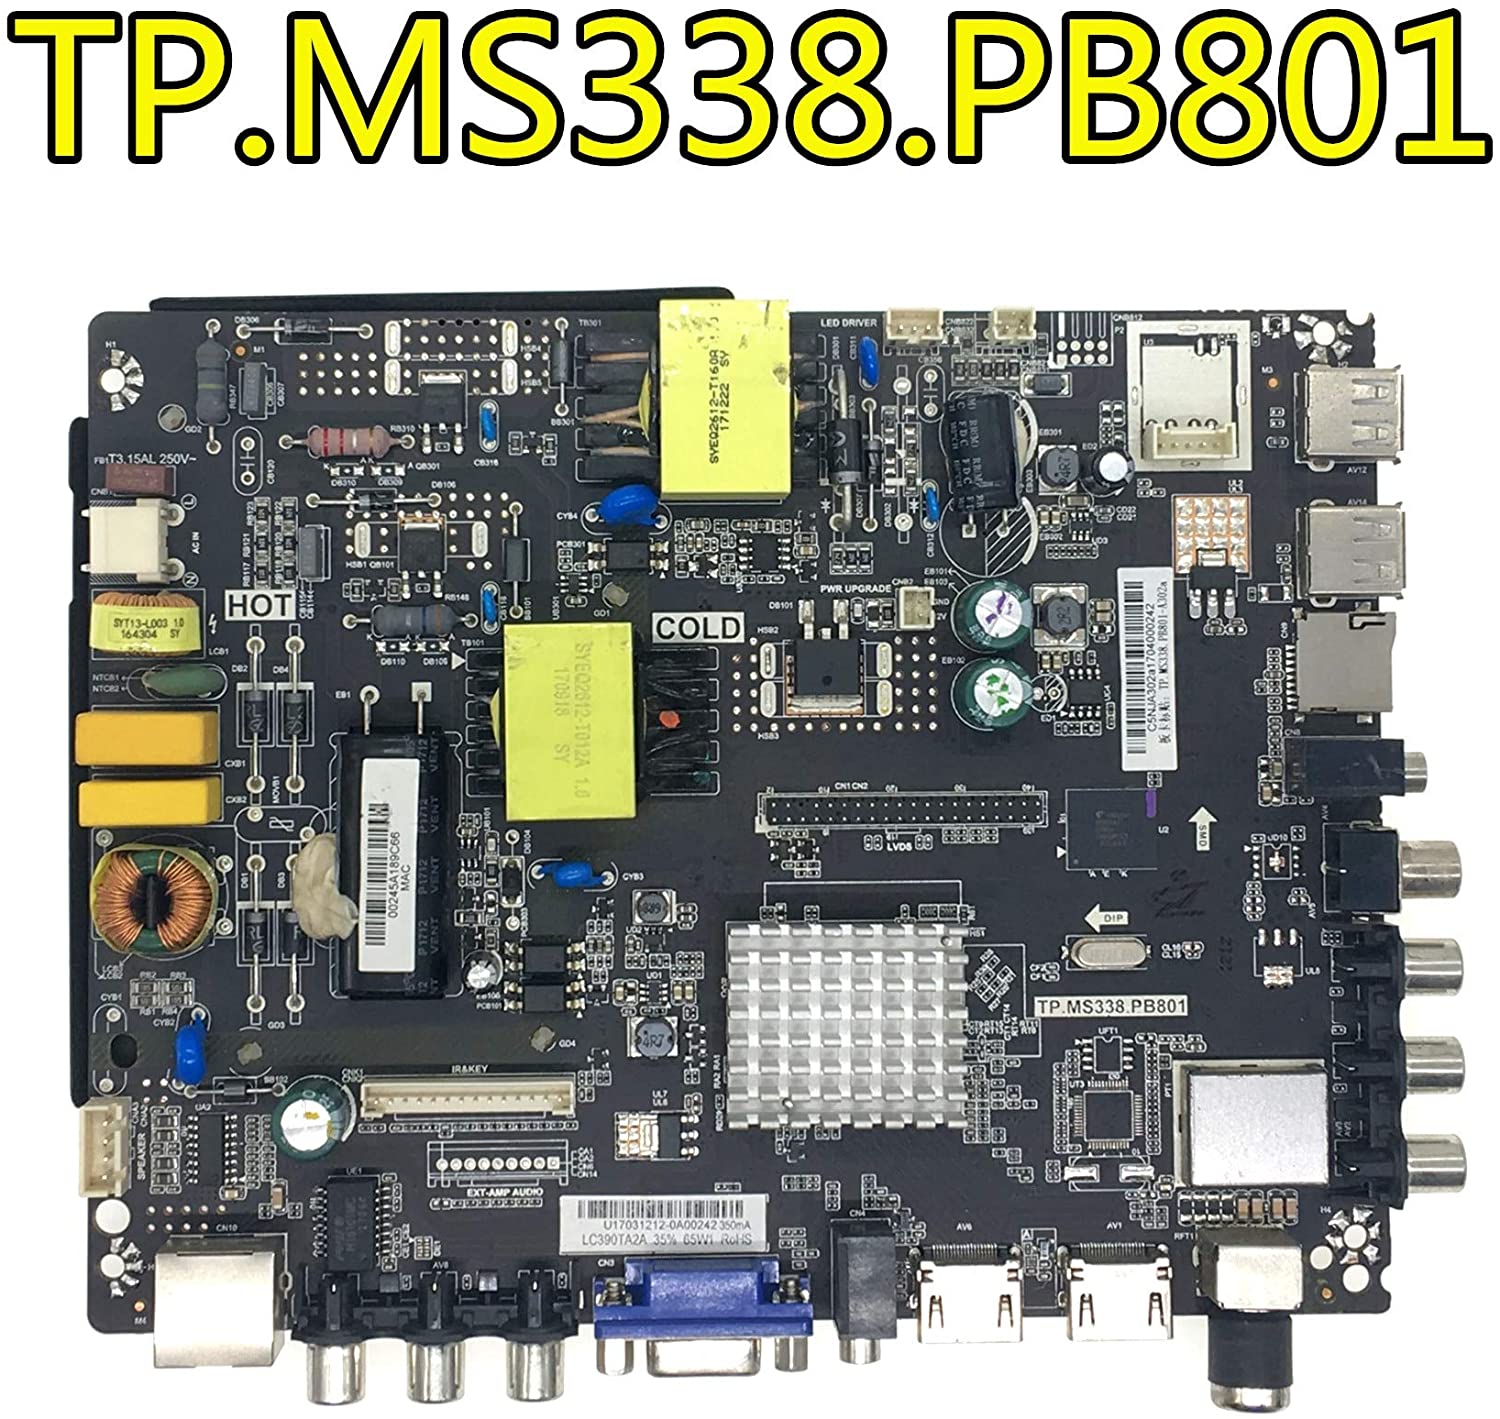 TP-MS338-PB801-Firmware